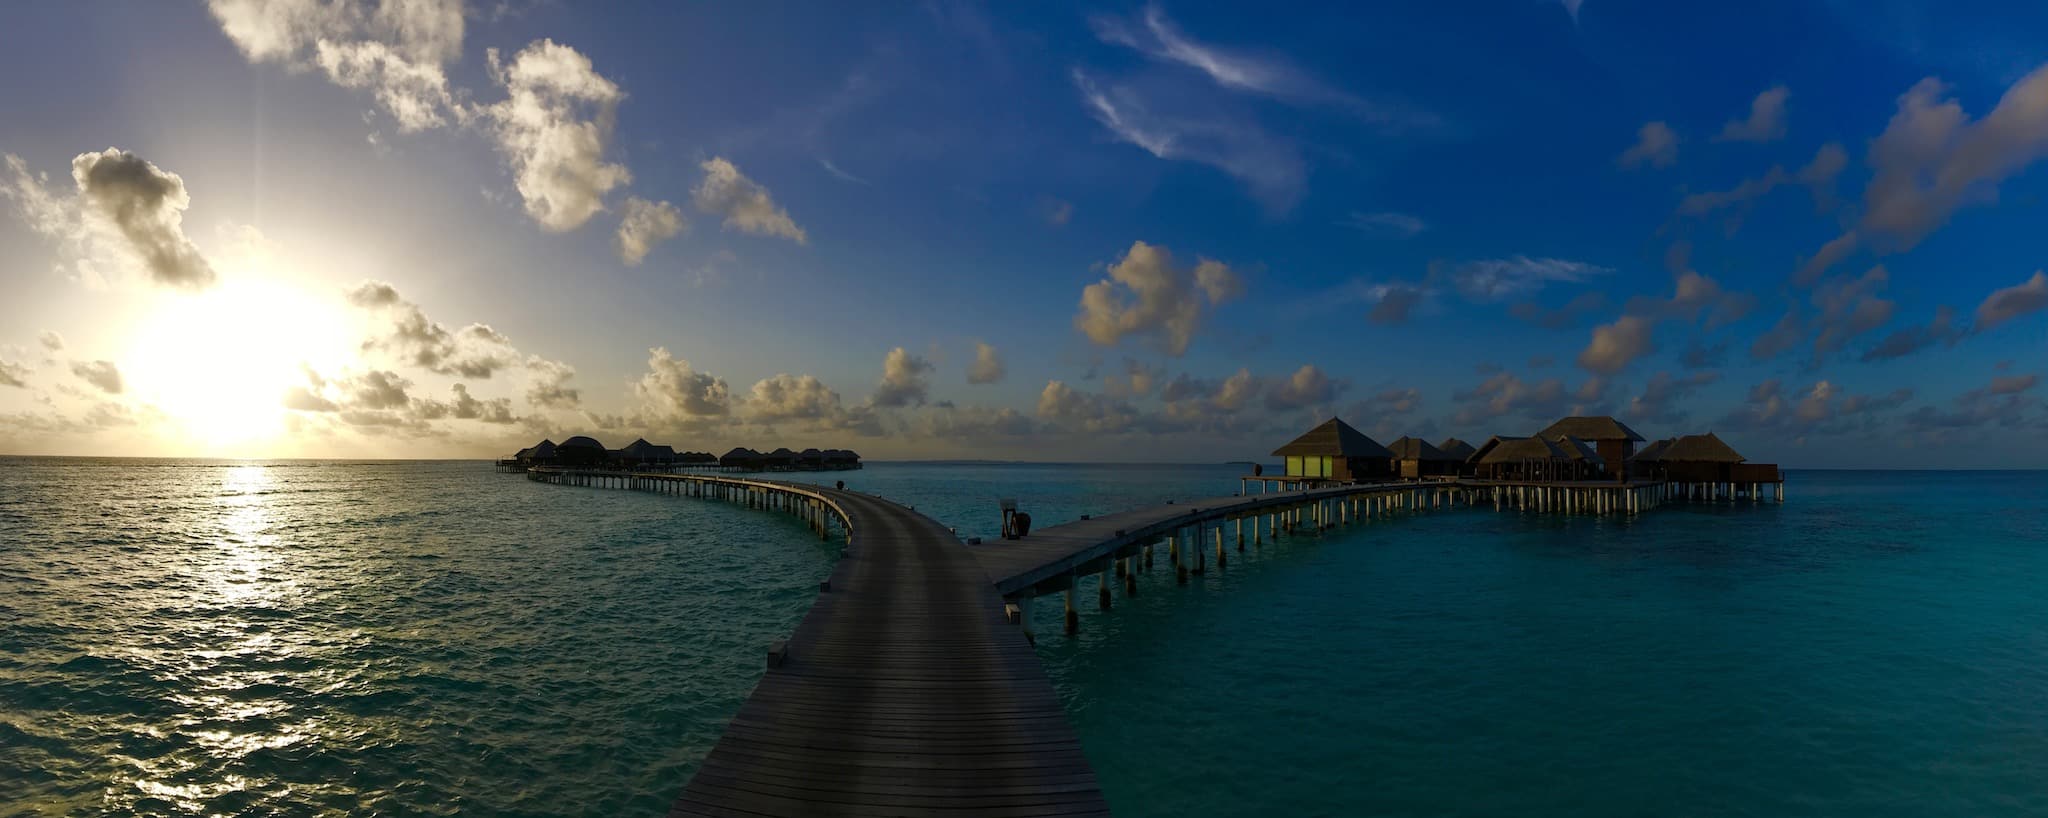 Prachtig droomeiland Coco Bodu Hithi: de Malediven zijn voor veel vakantiegangers wereldwijd een droombestemming. Foto: Sascha Tegtmeyer